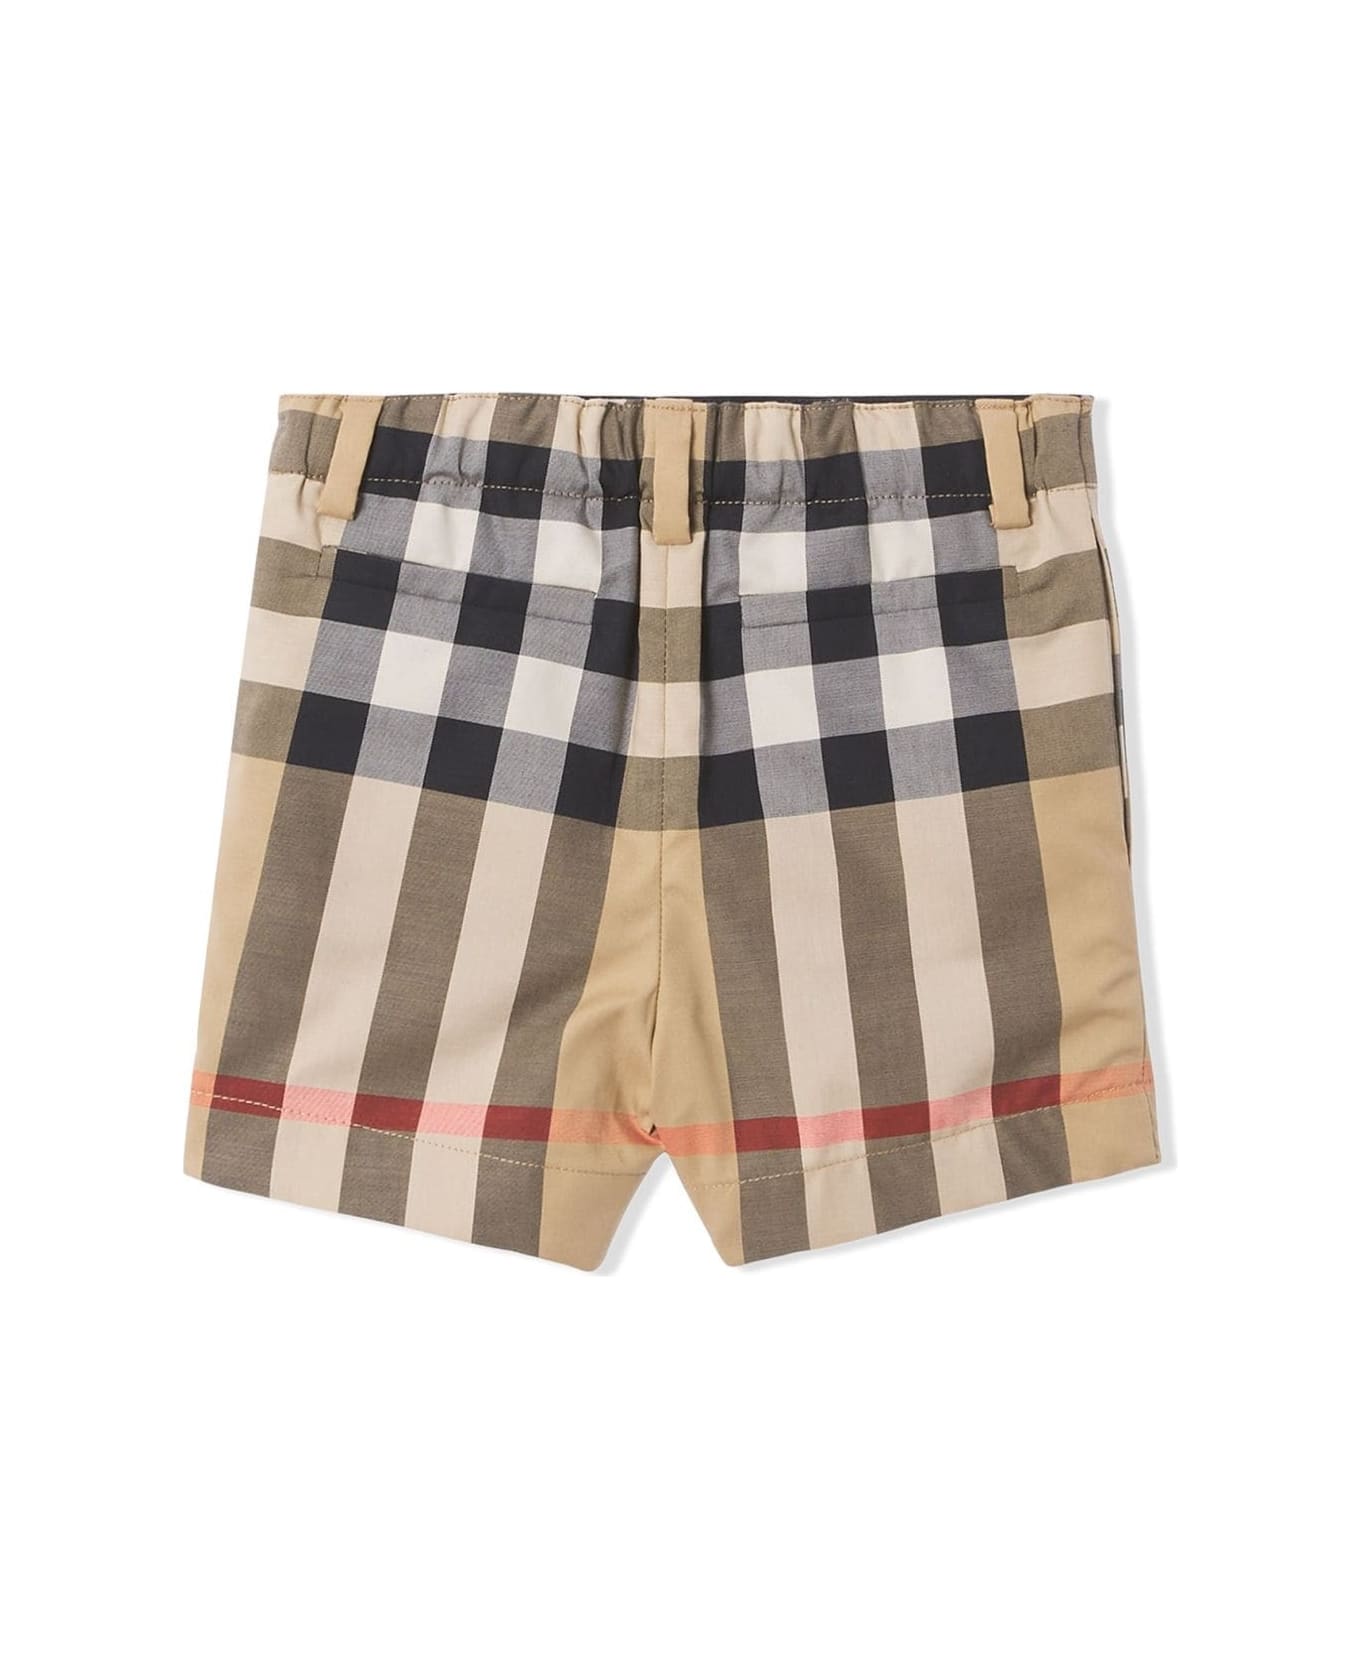 Burberry Boys Vintage Check Cotton Shorts - Beige